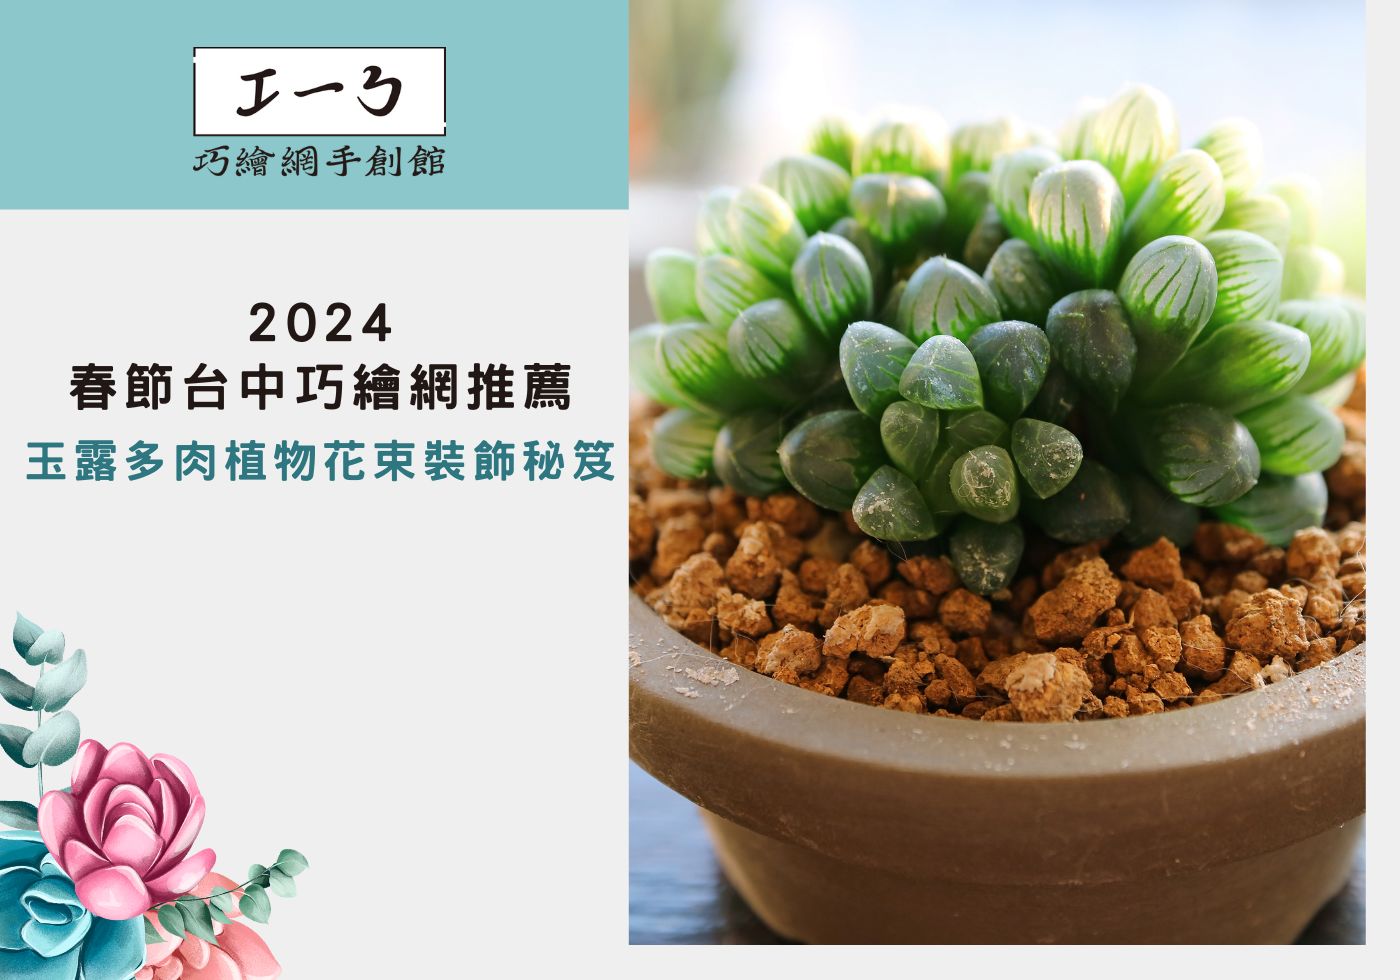 您目前正在查看 2024春節台中巧繪網推薦：玉露多肉植物花束裝飾秘笈